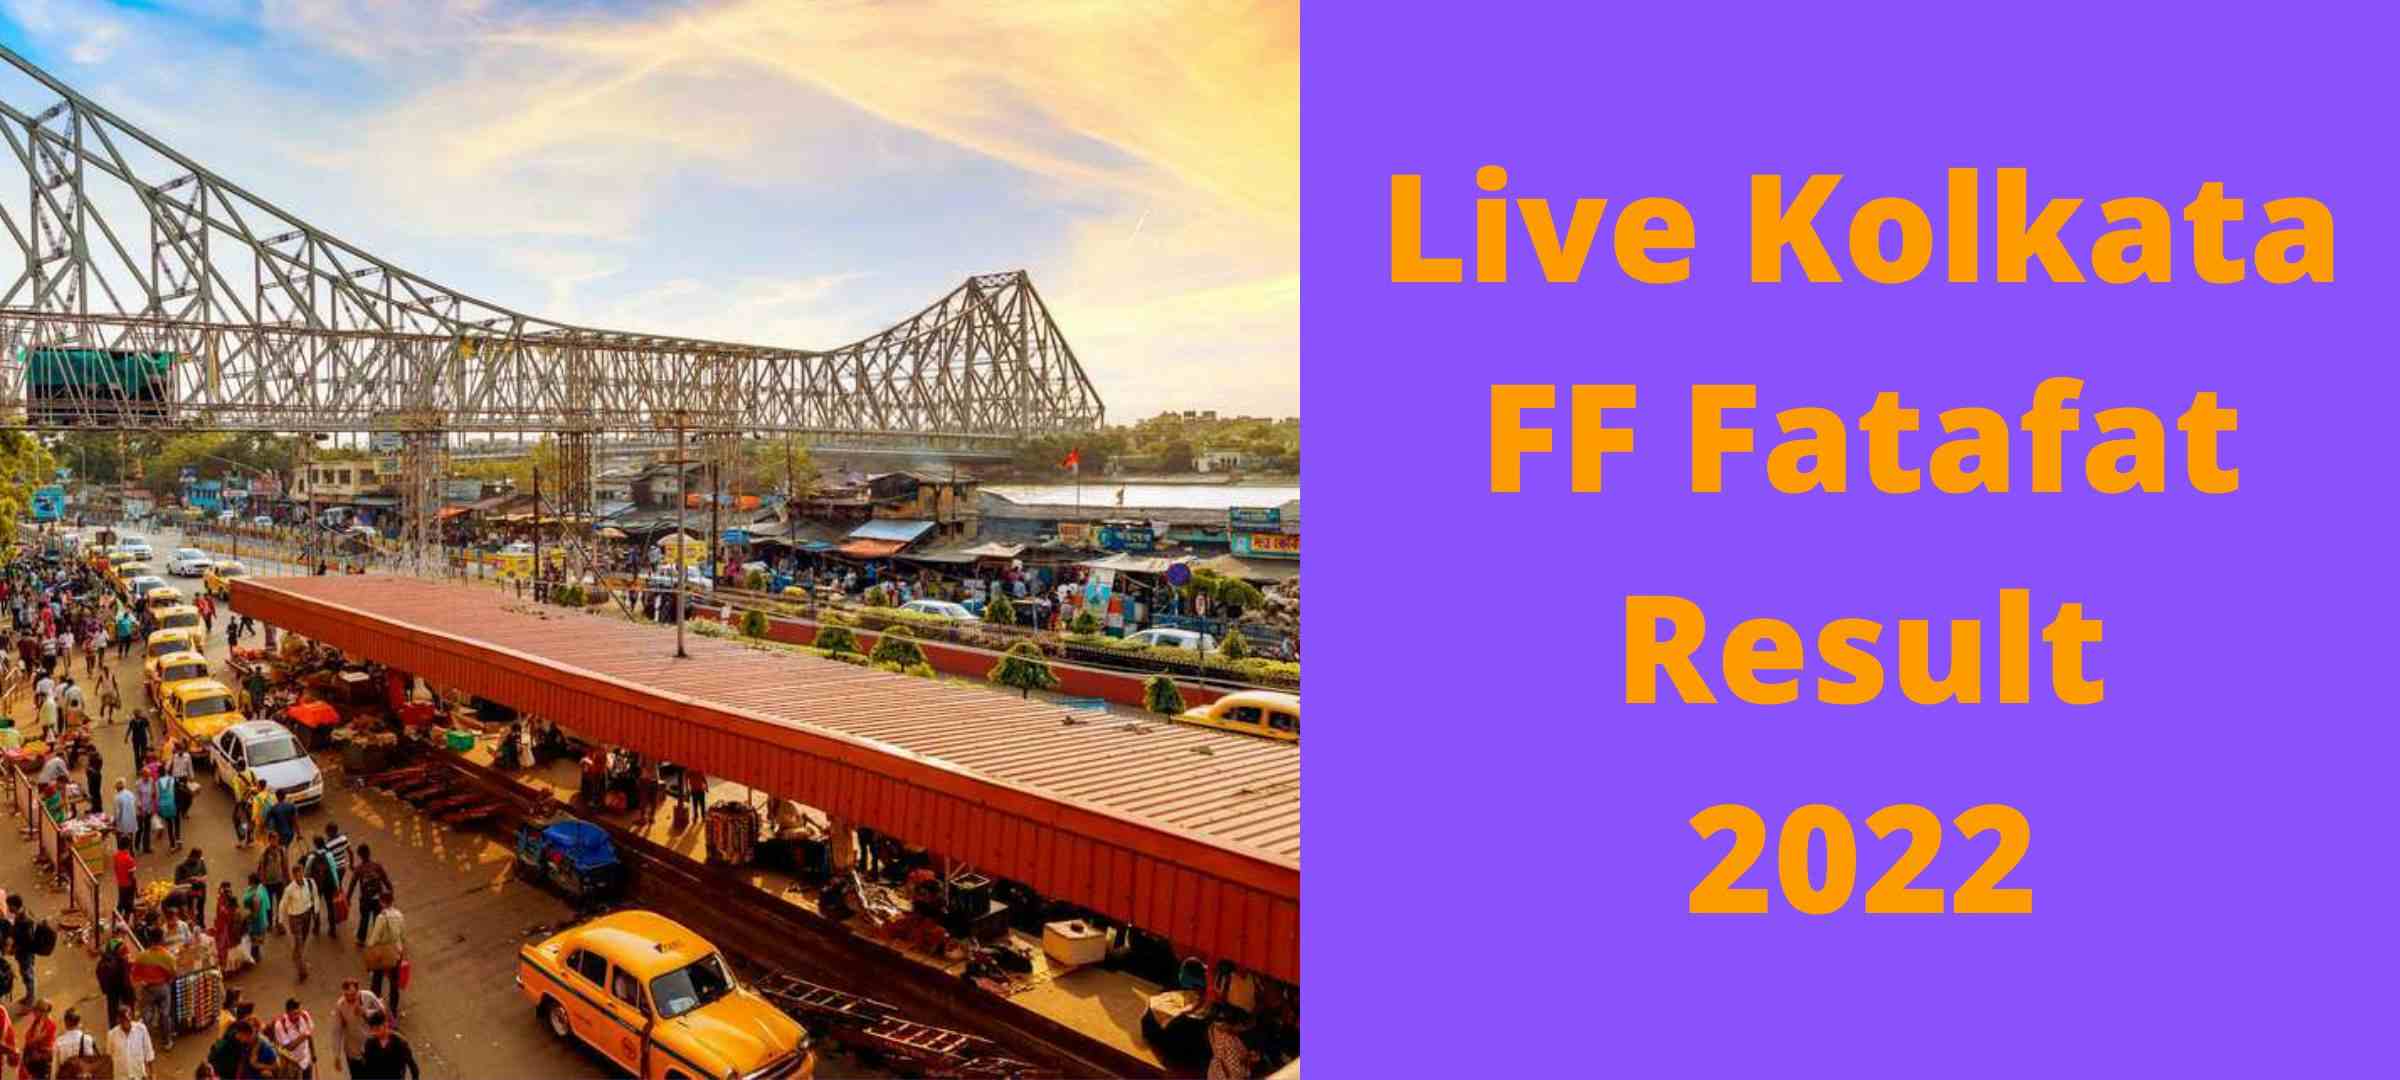 Live Kolkata FF Fatafat Result 2022 - Check status process all in one